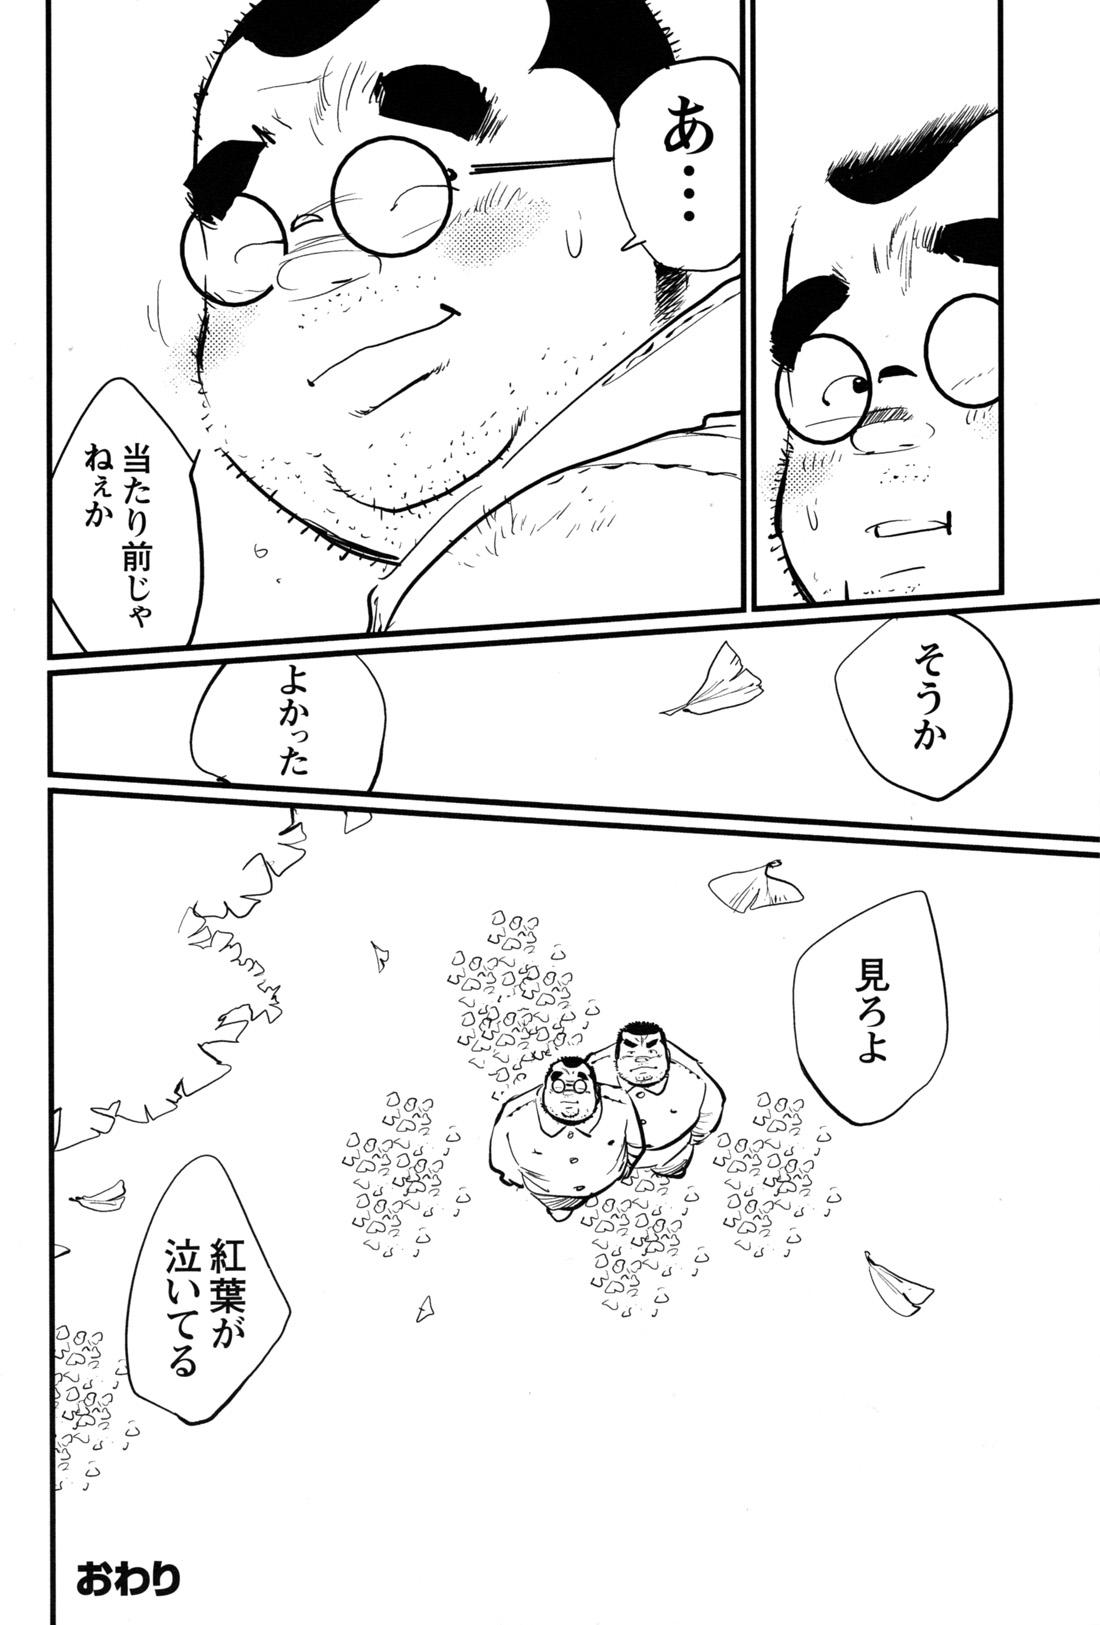 Comic G-men Gaho No.12 Aibou 39